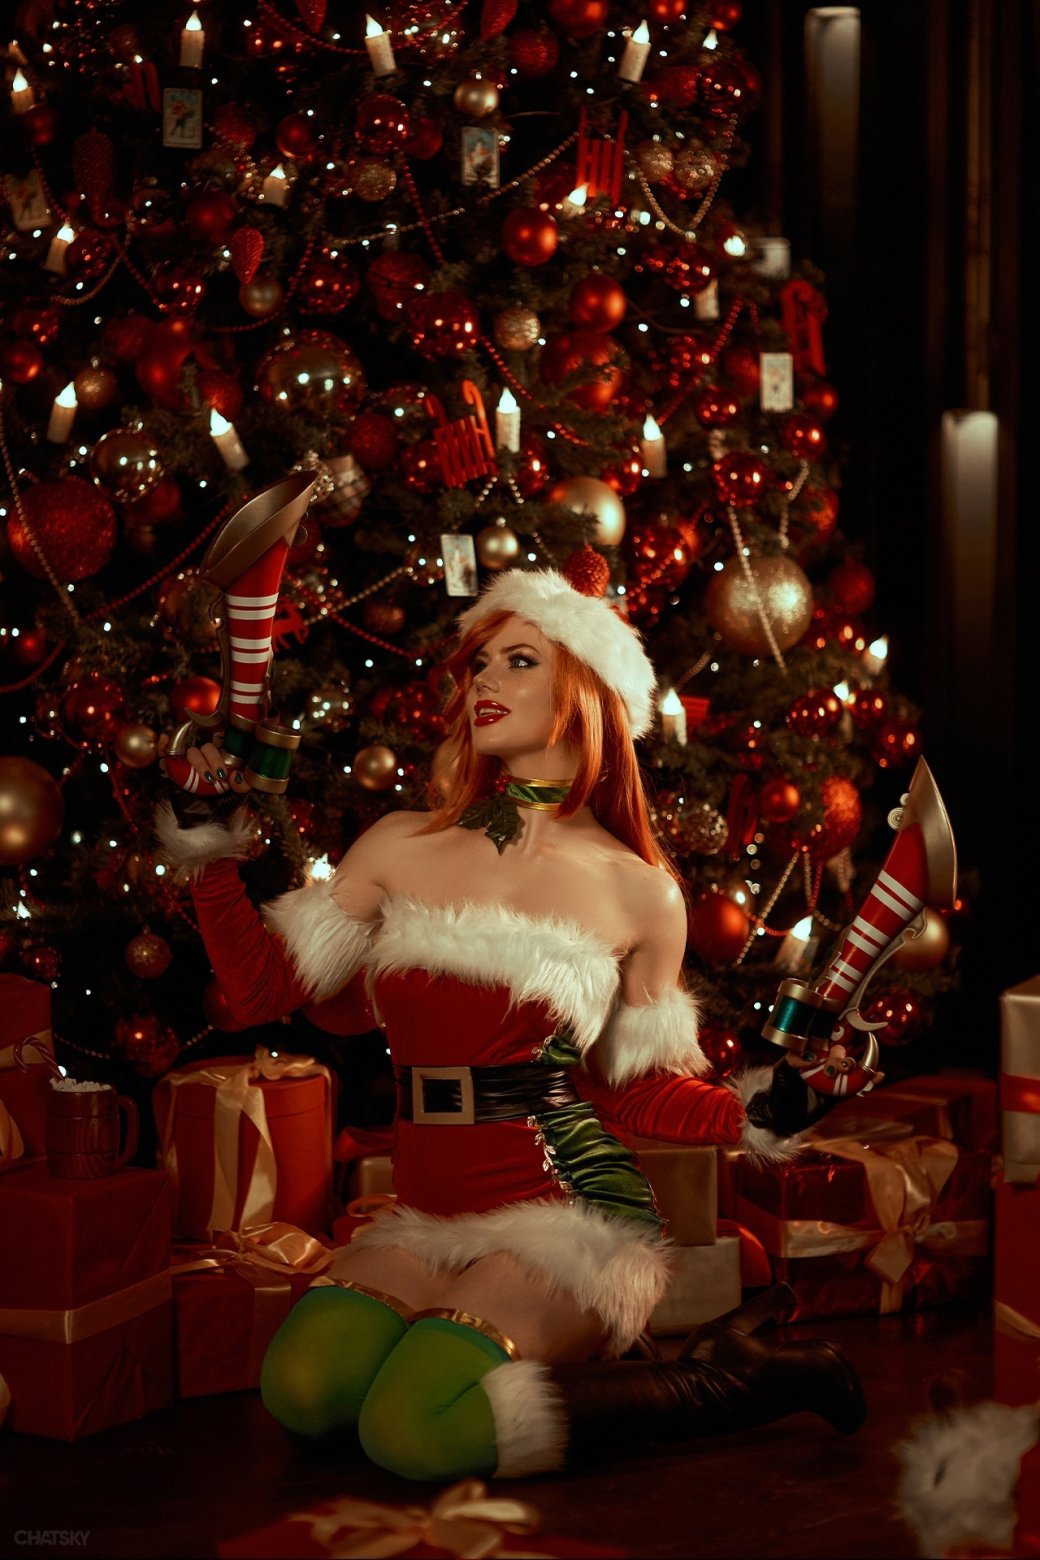 Галерея Модель снялась в новогоднем образе Мисс Фортуны из League of Legends - 6 фото